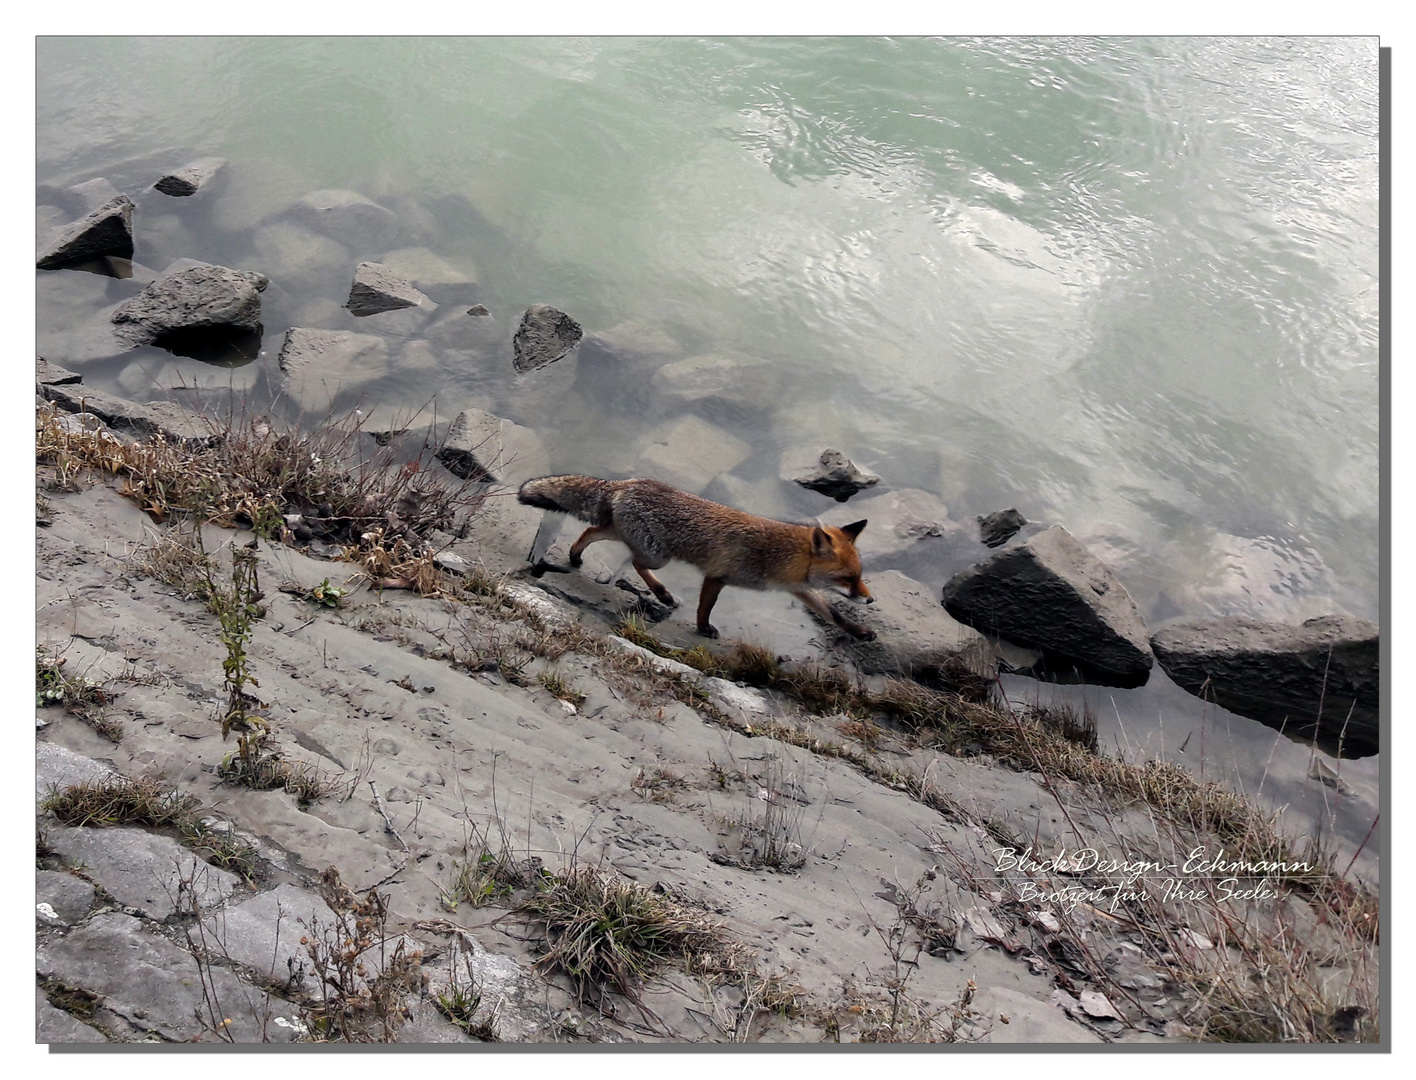 Donaufuchs... Fox on the run.